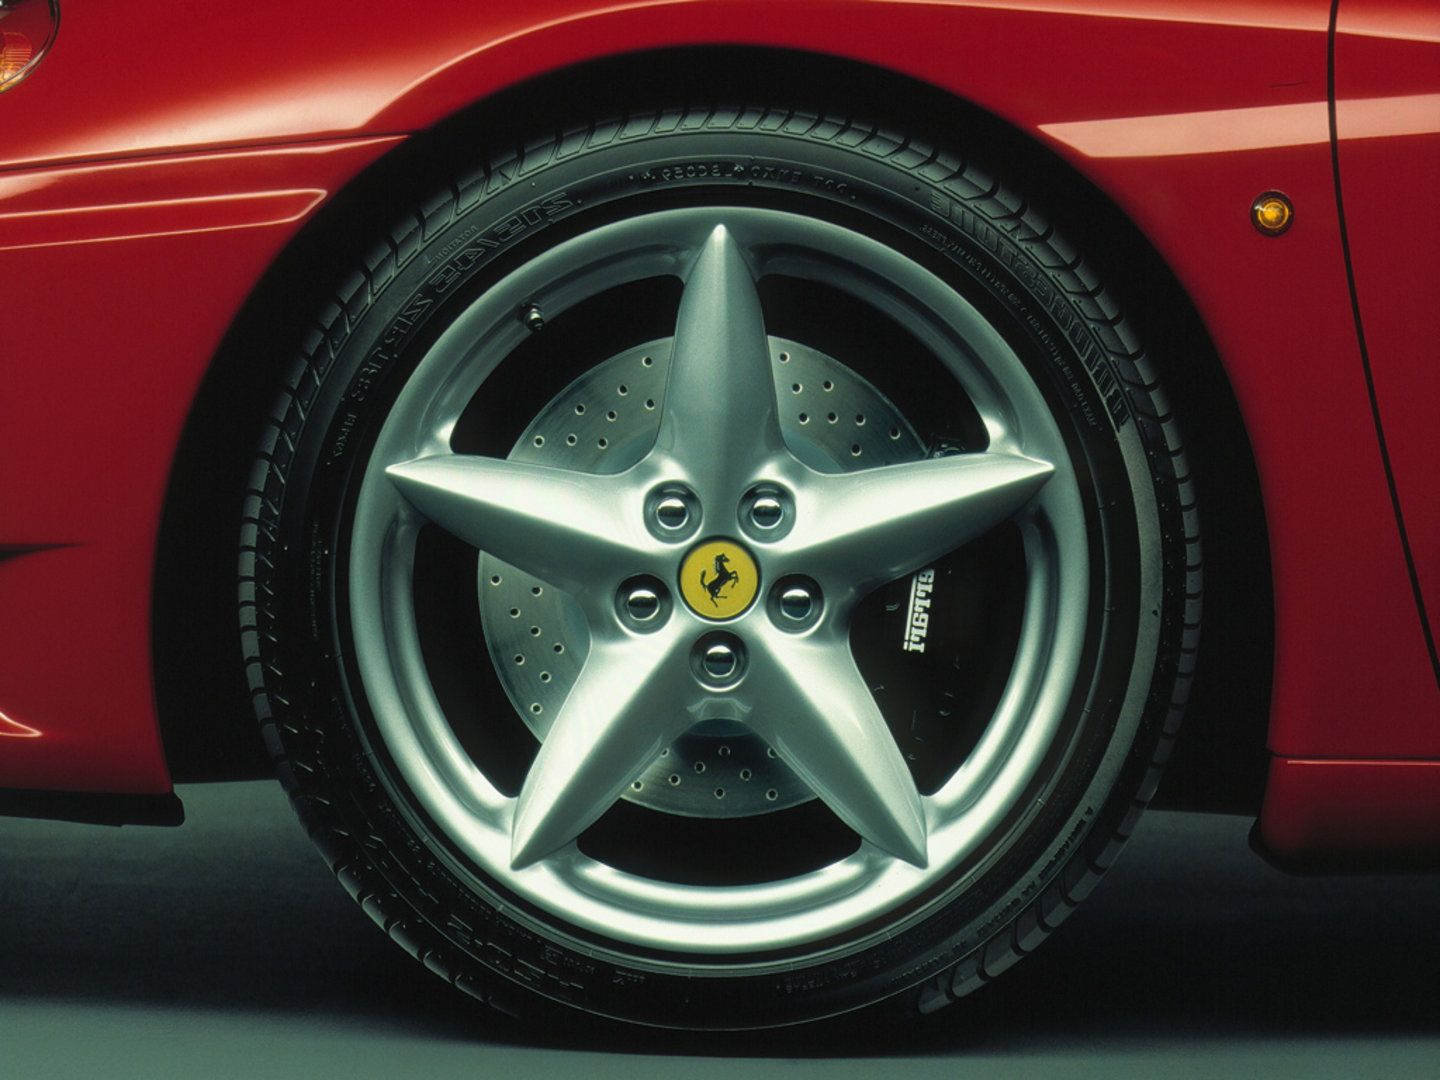 1999 - 2004 Ferrari 360 Modena